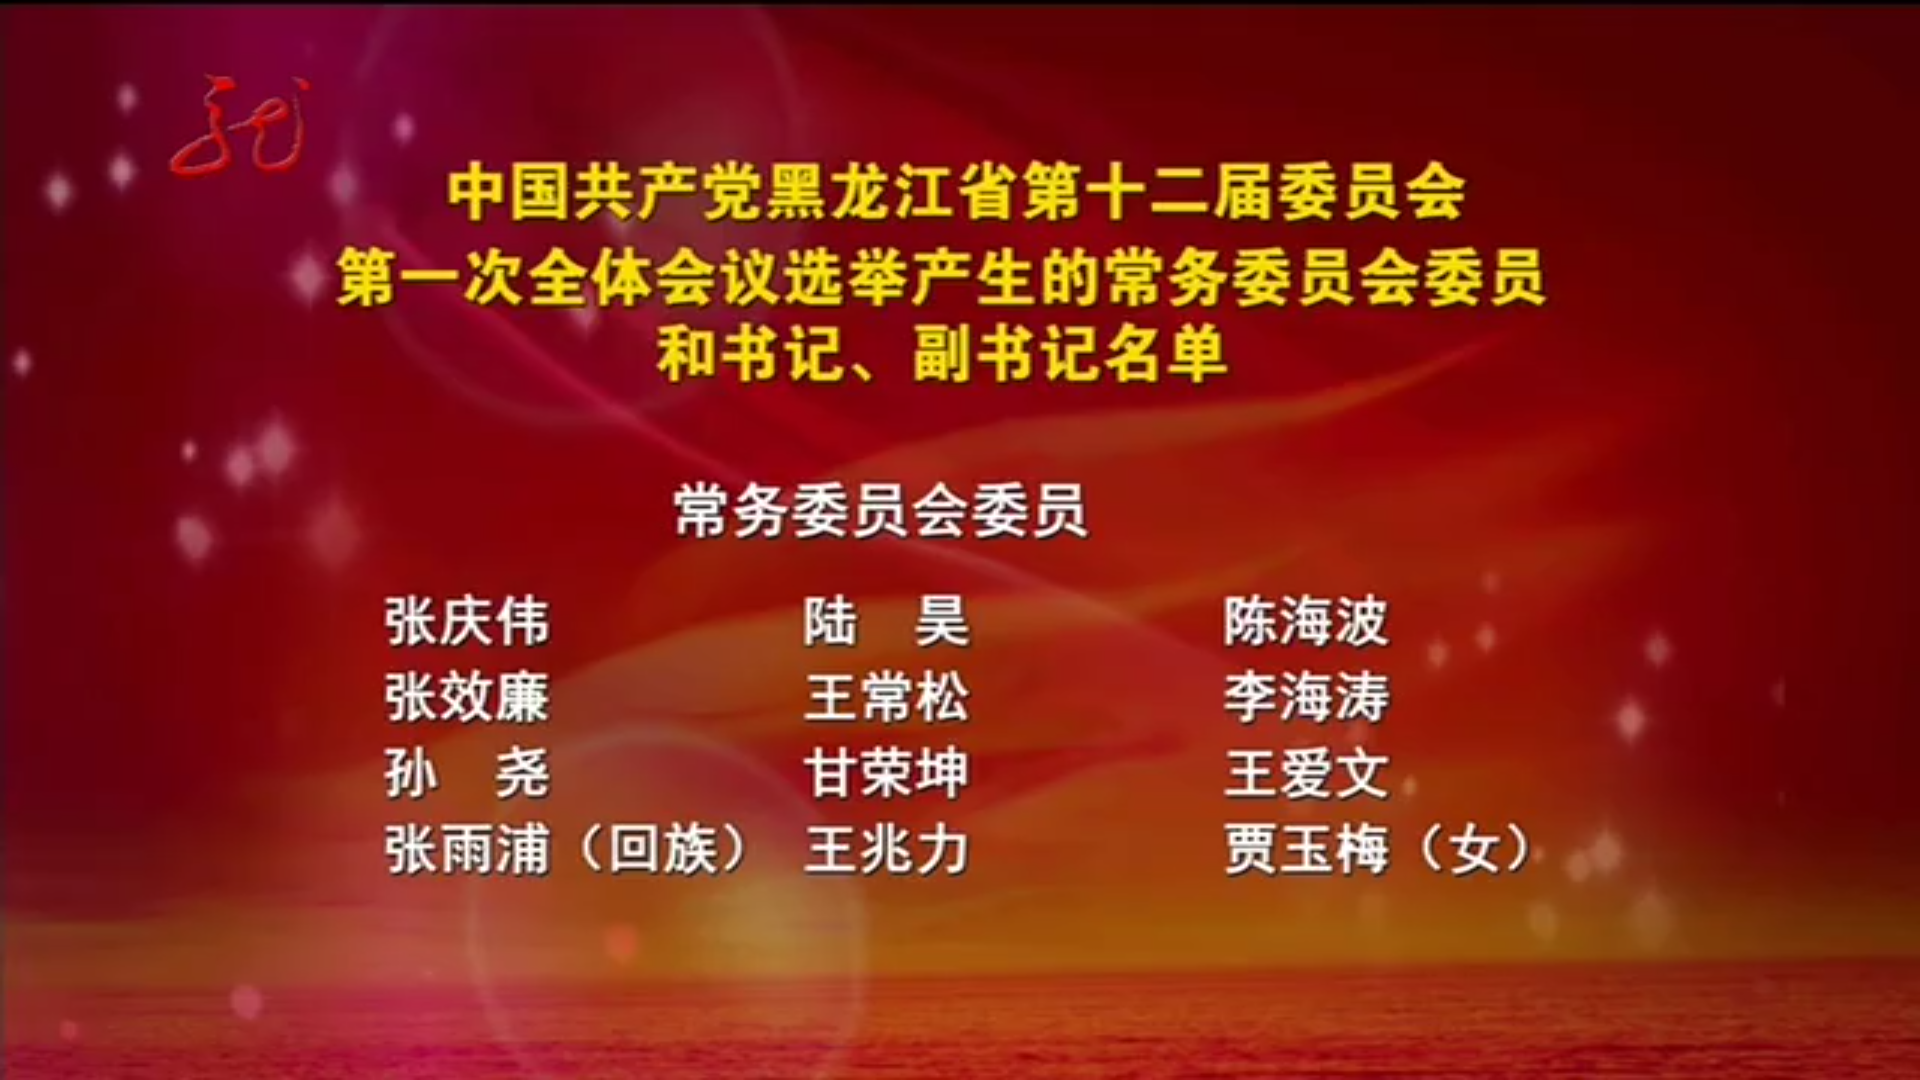 2017年5月當選的中共黑龍江省委常委名單